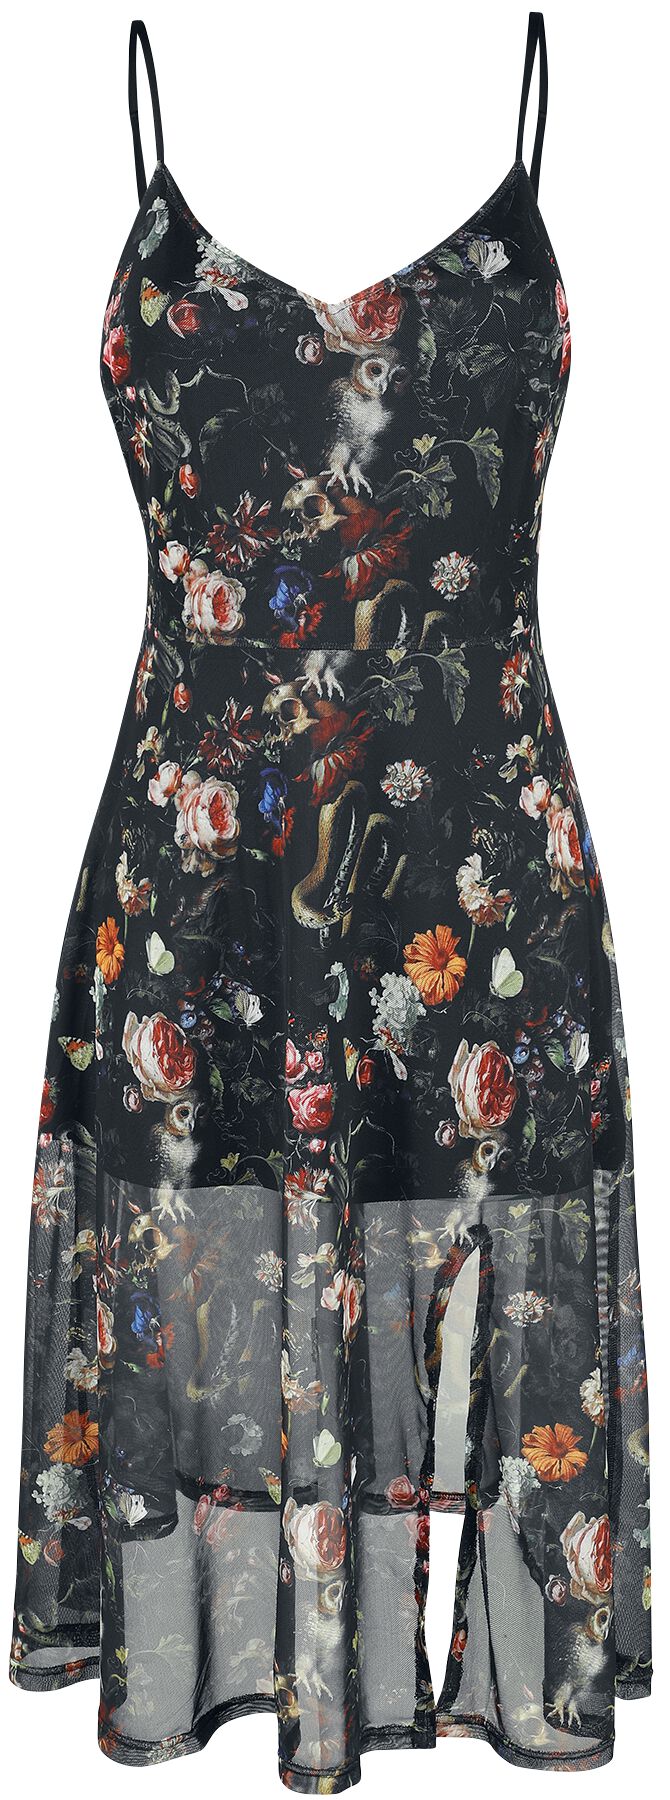 Jawbreaker - Gothic Kleid knielang - Night Garden Print Midi Dress - XS bis 4XL - für Damen - Größe XL - multicolor